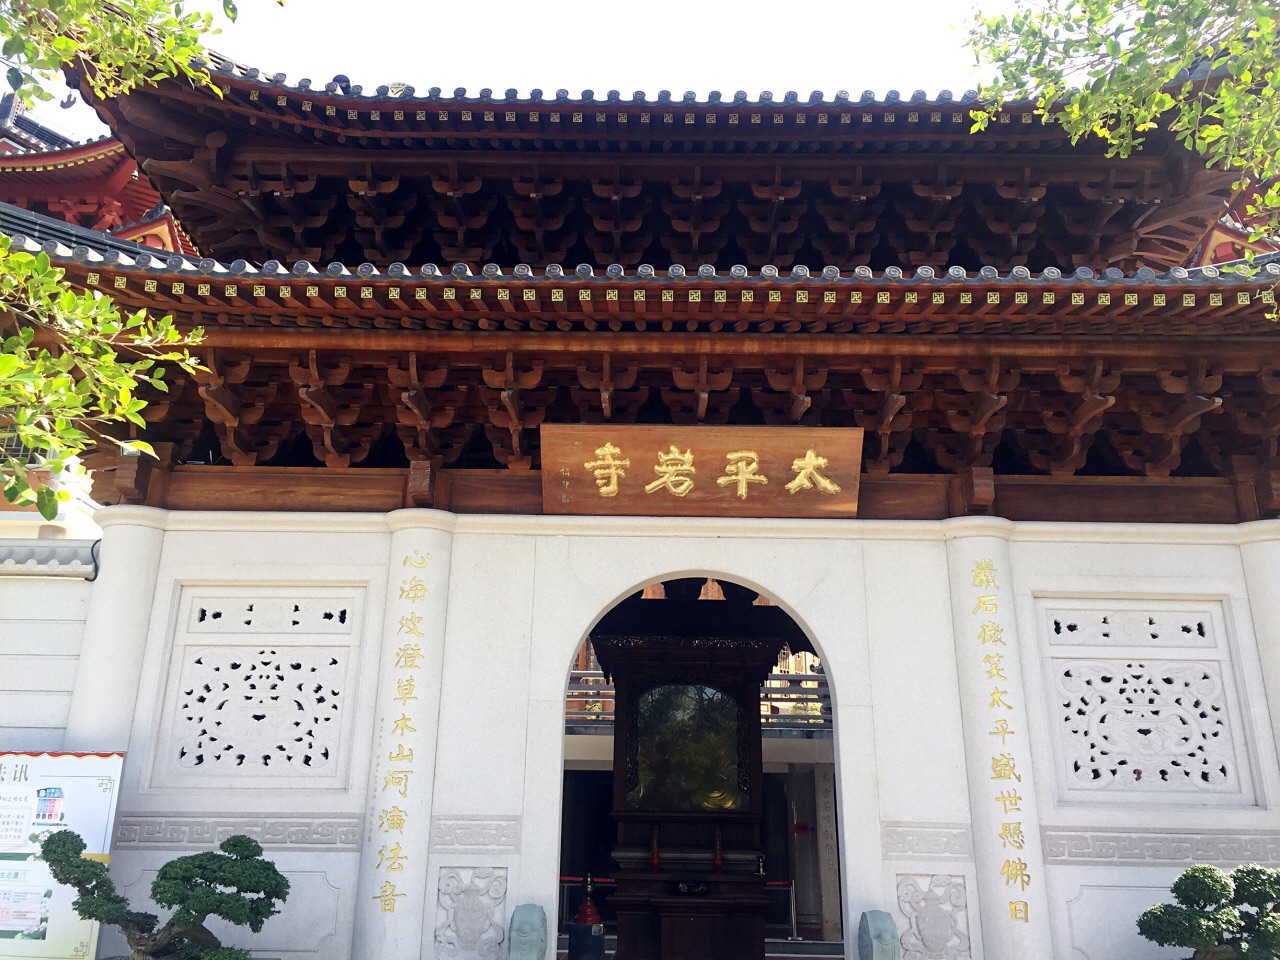 太平岩寺